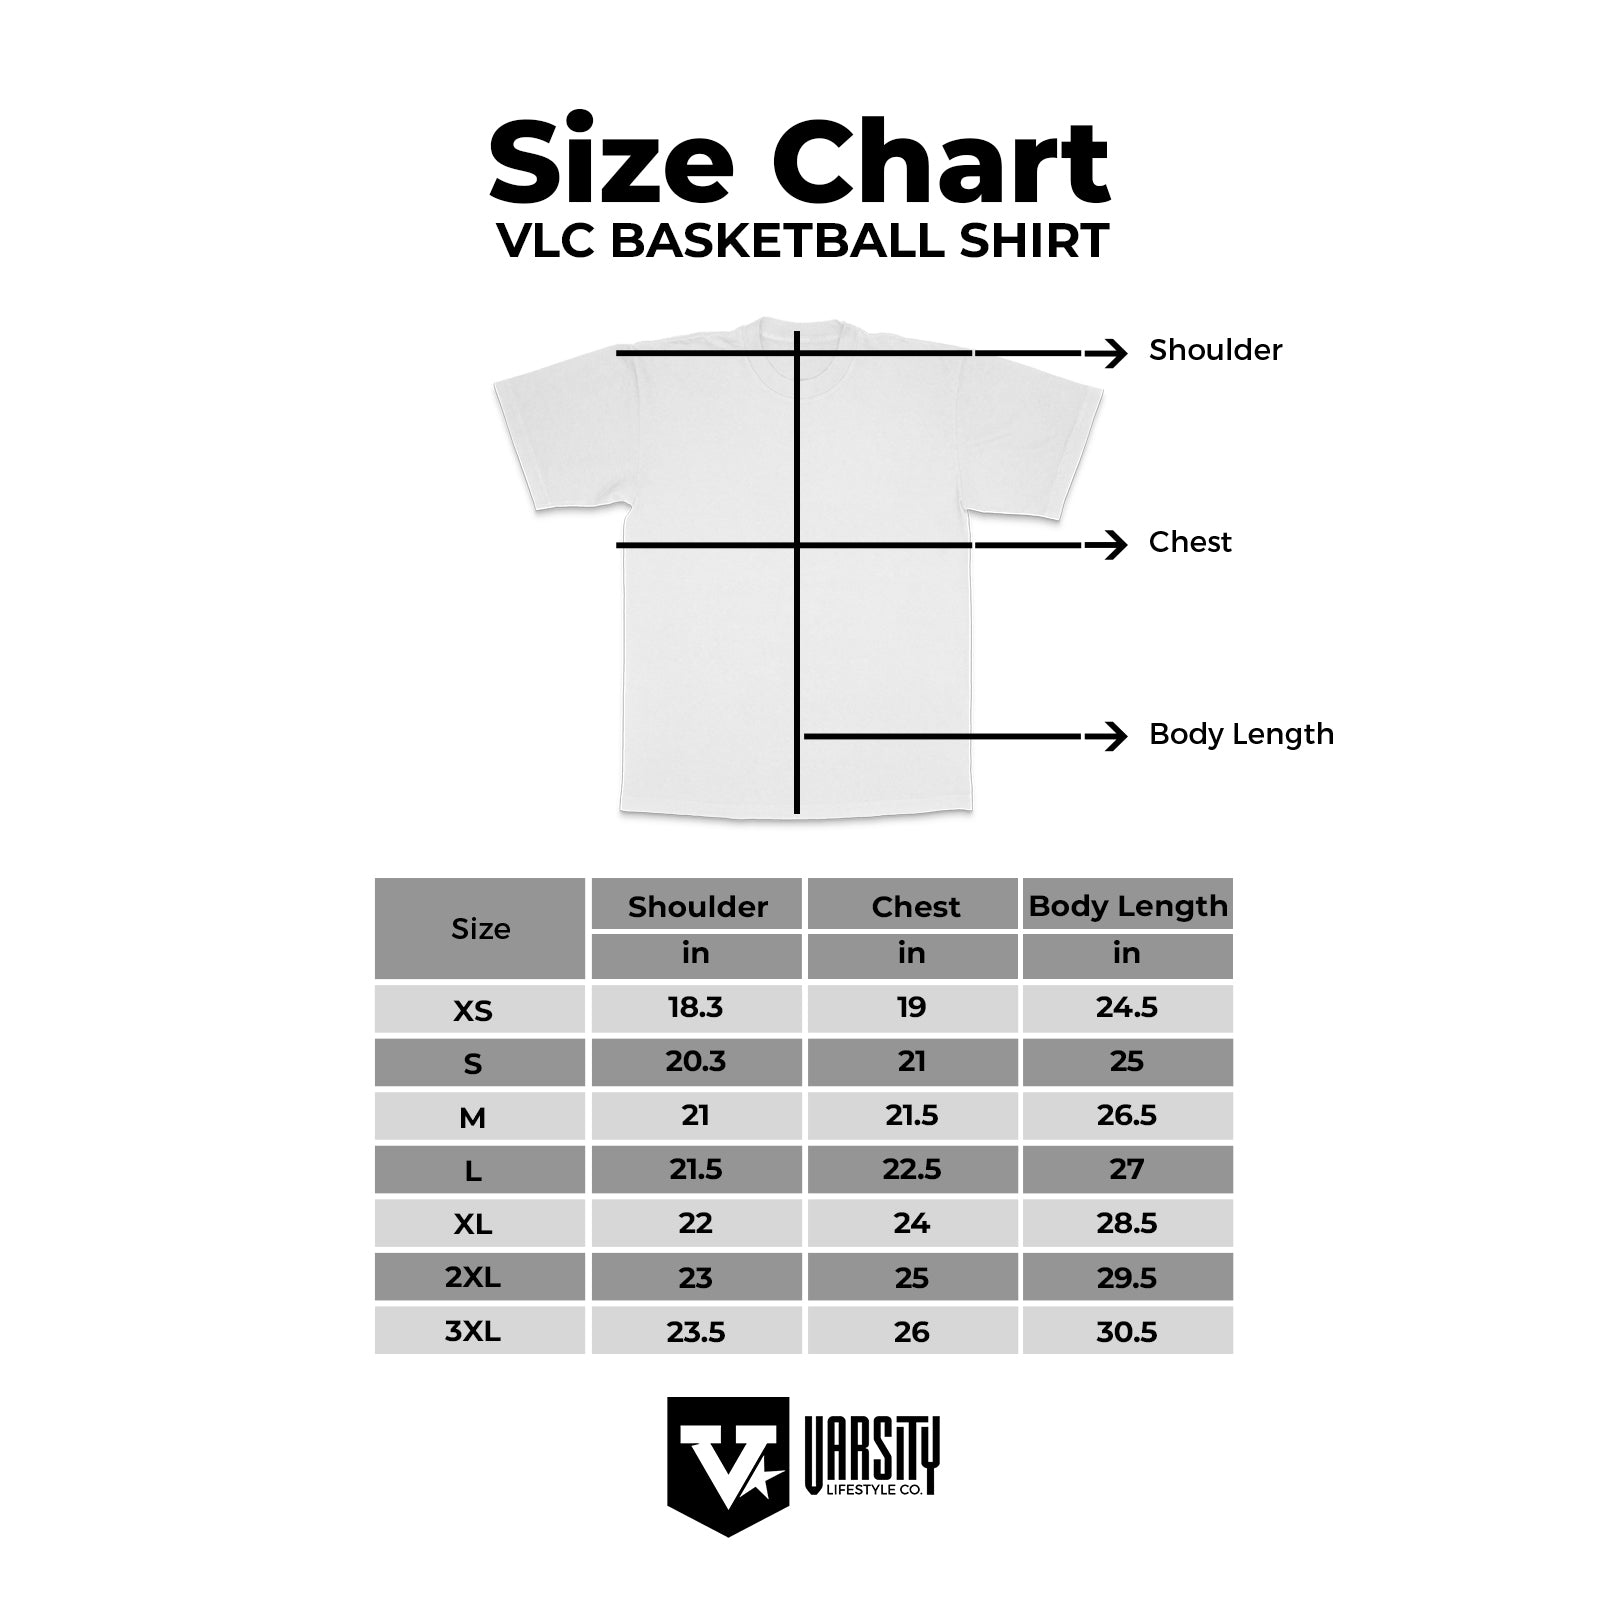 UP Basketball T-Shirt